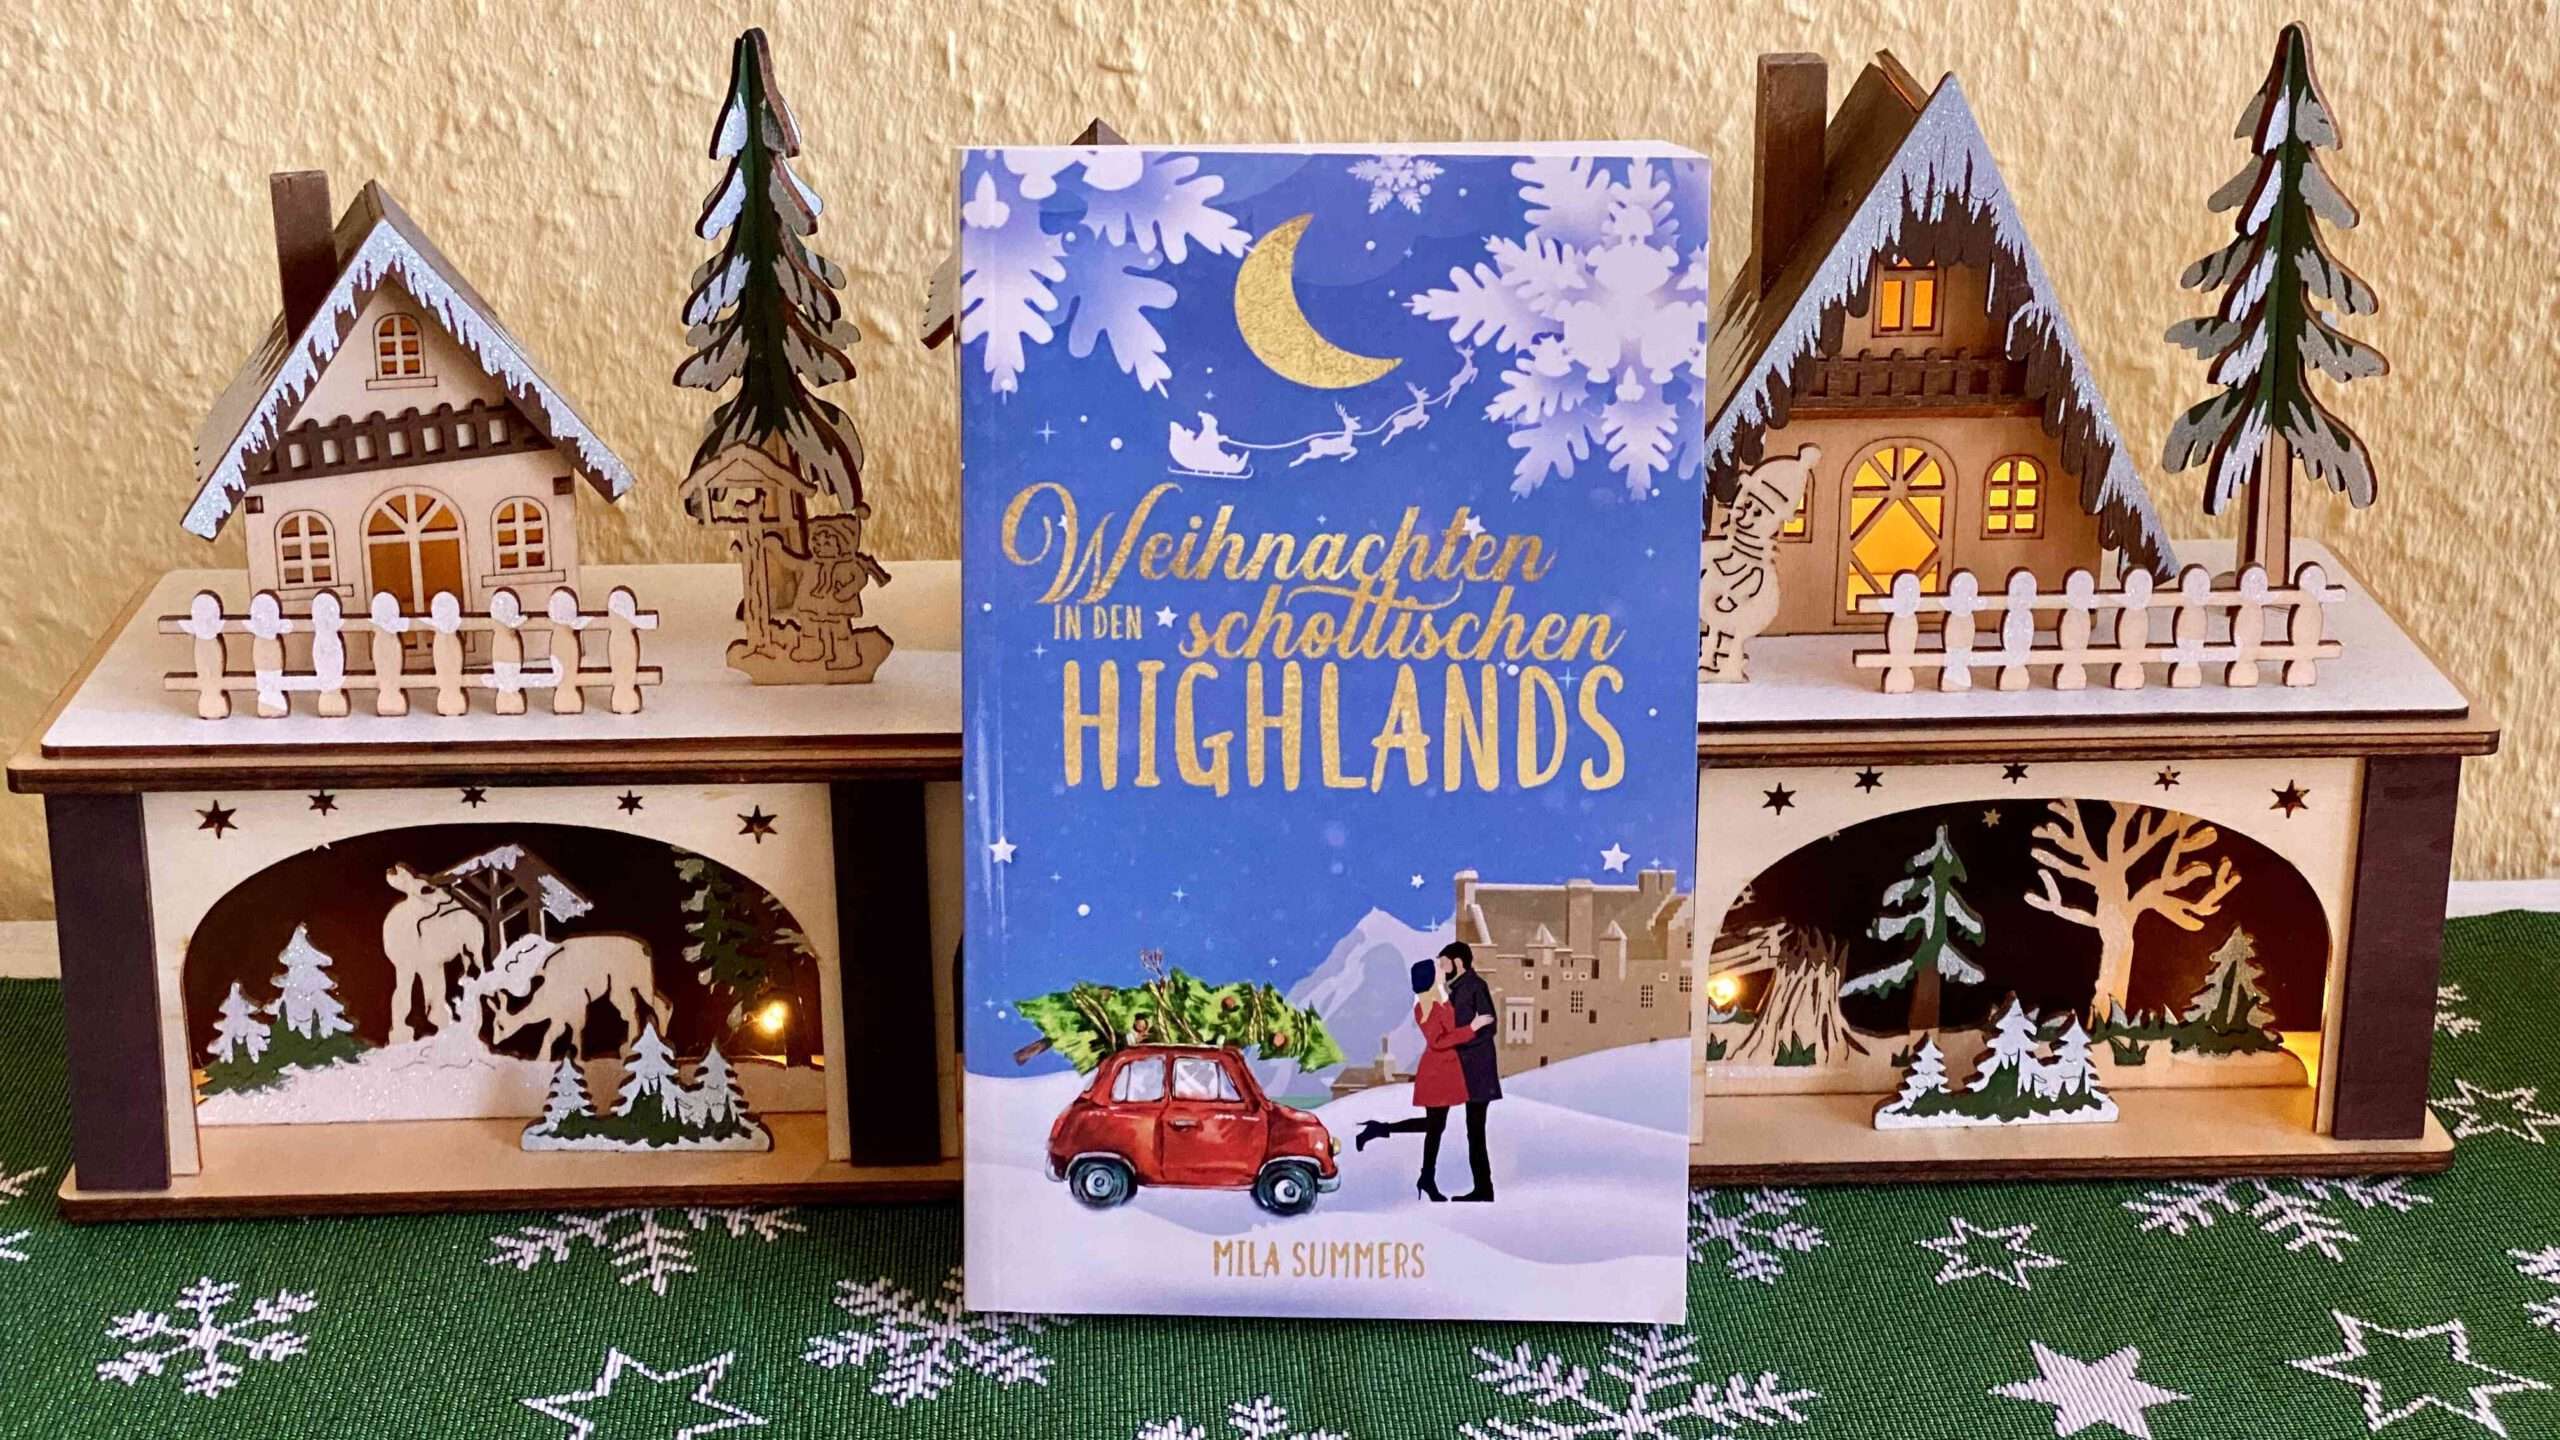 You are currently viewing „Weihnachten in den schottischen Highlands“ von Mila Summers